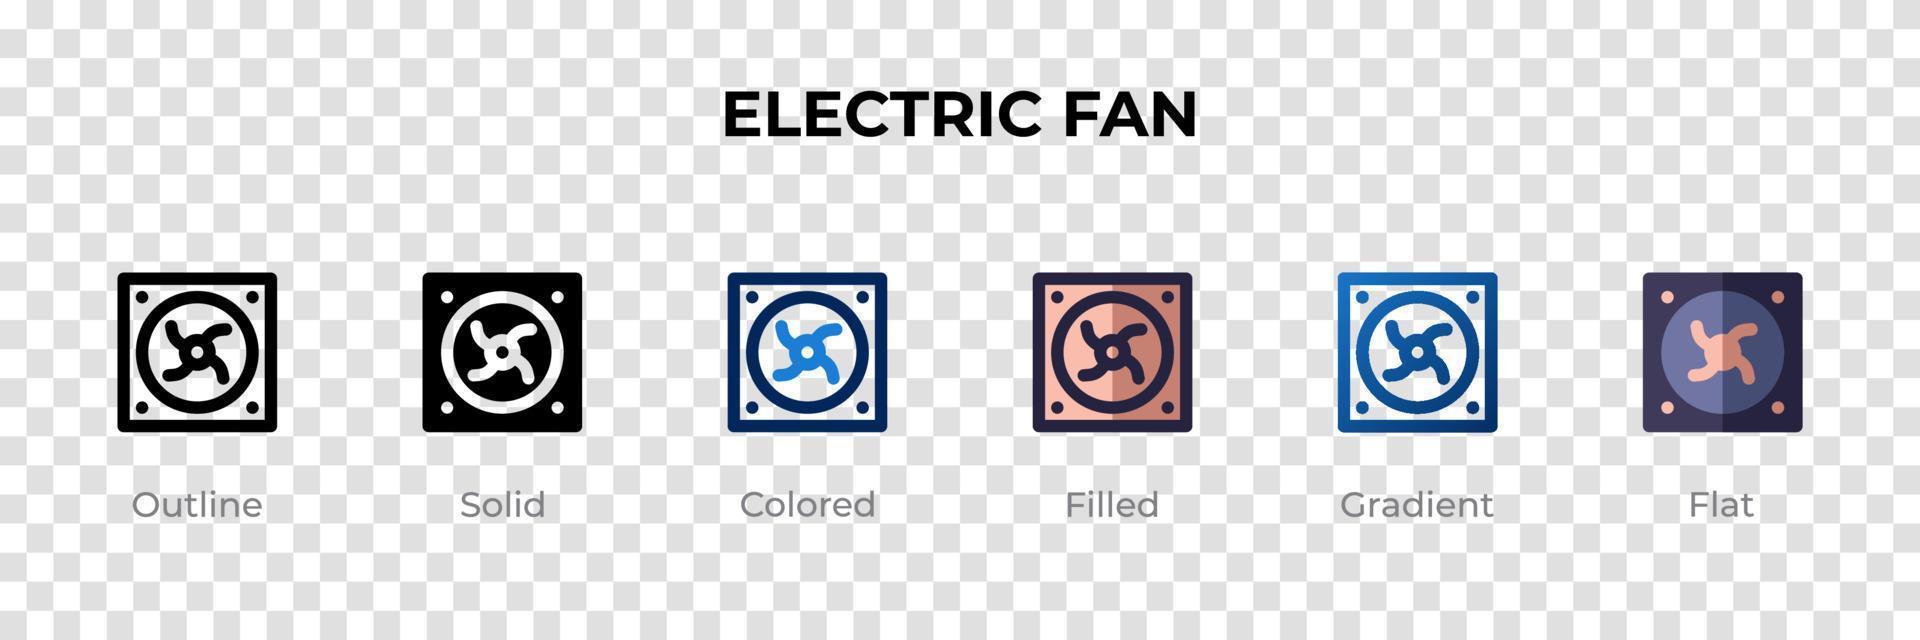 ícone de ventilador elétrico em estilo diferente. ícones de vetor de ventilador elétrico projetados em estilo de contorno, sólido, colorido, preenchido, gradiente e plano. símbolo, ilustração do logotipo. ilustração vetorial